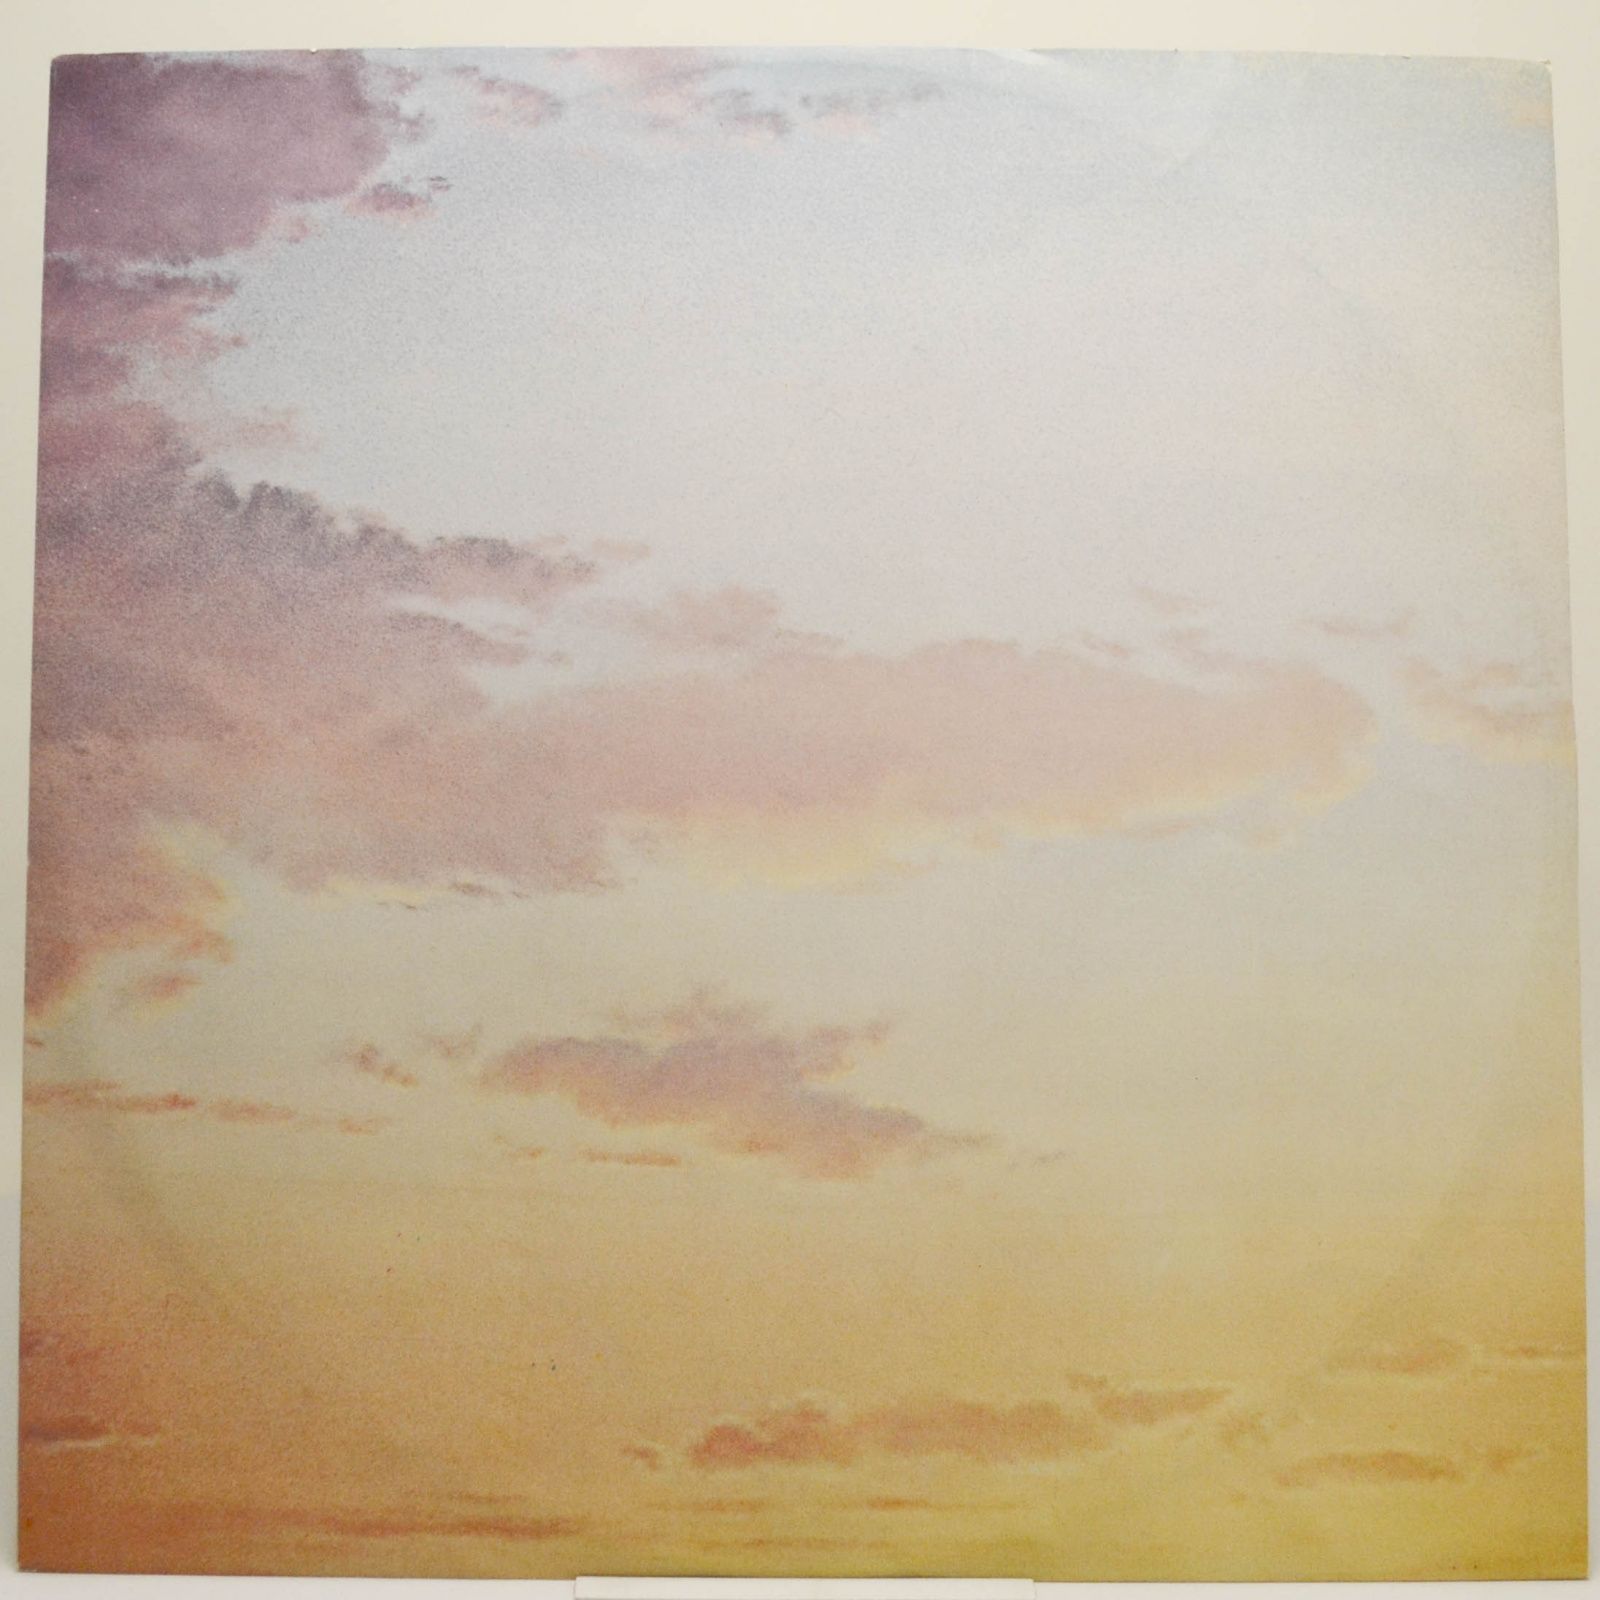 Neil Diamond — On The Way To The Sky, 1981